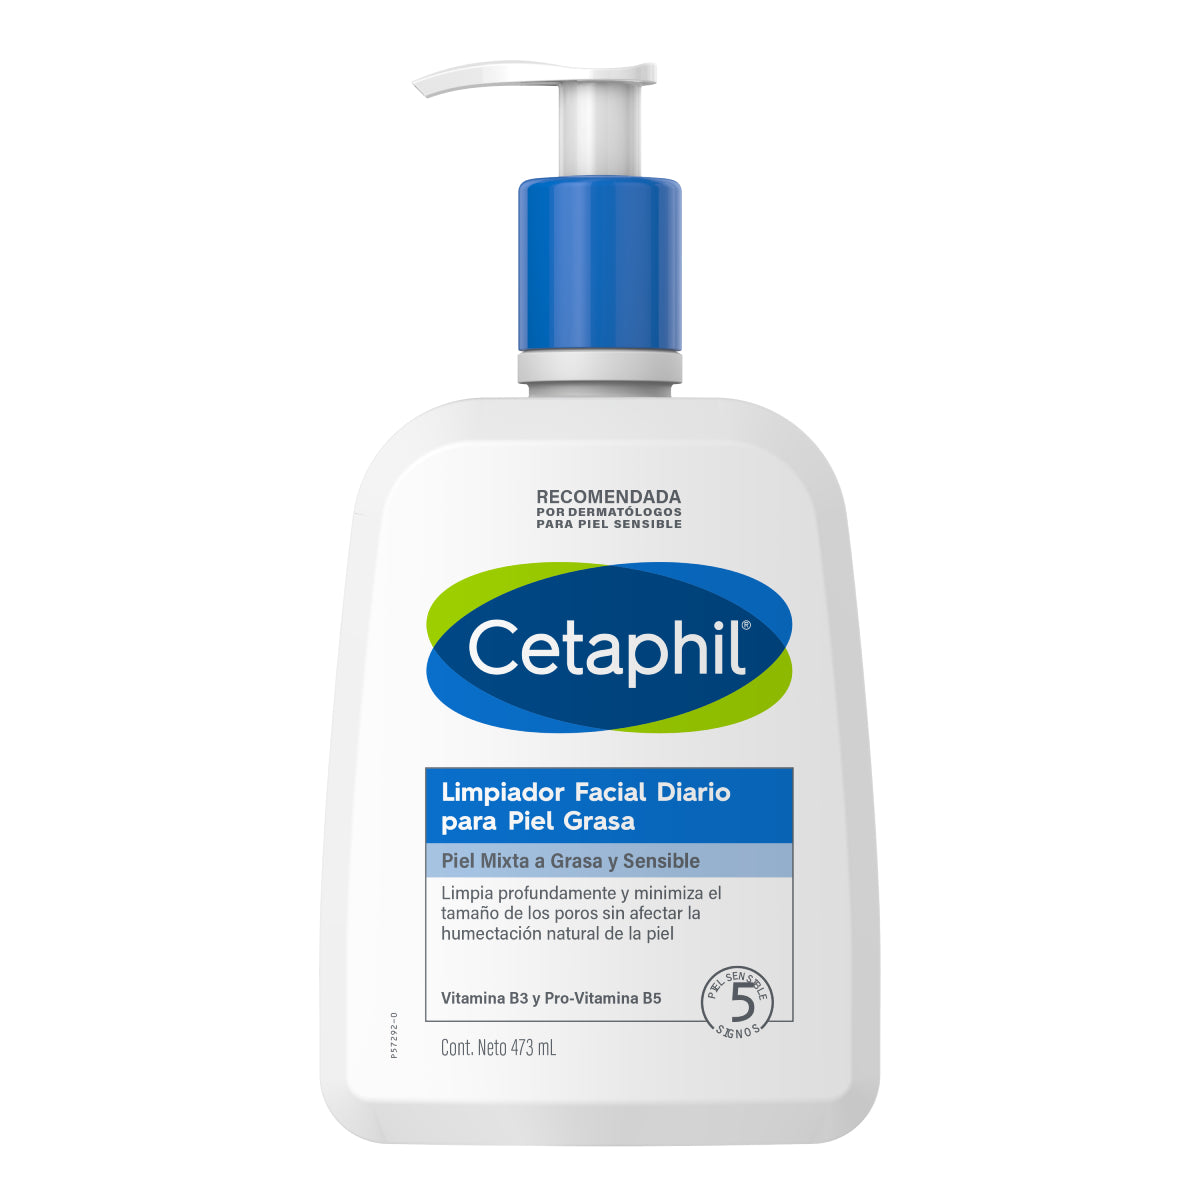 Cetaphil, Limpiador facial diario para piel grasa, 473ml – Derma Express MX